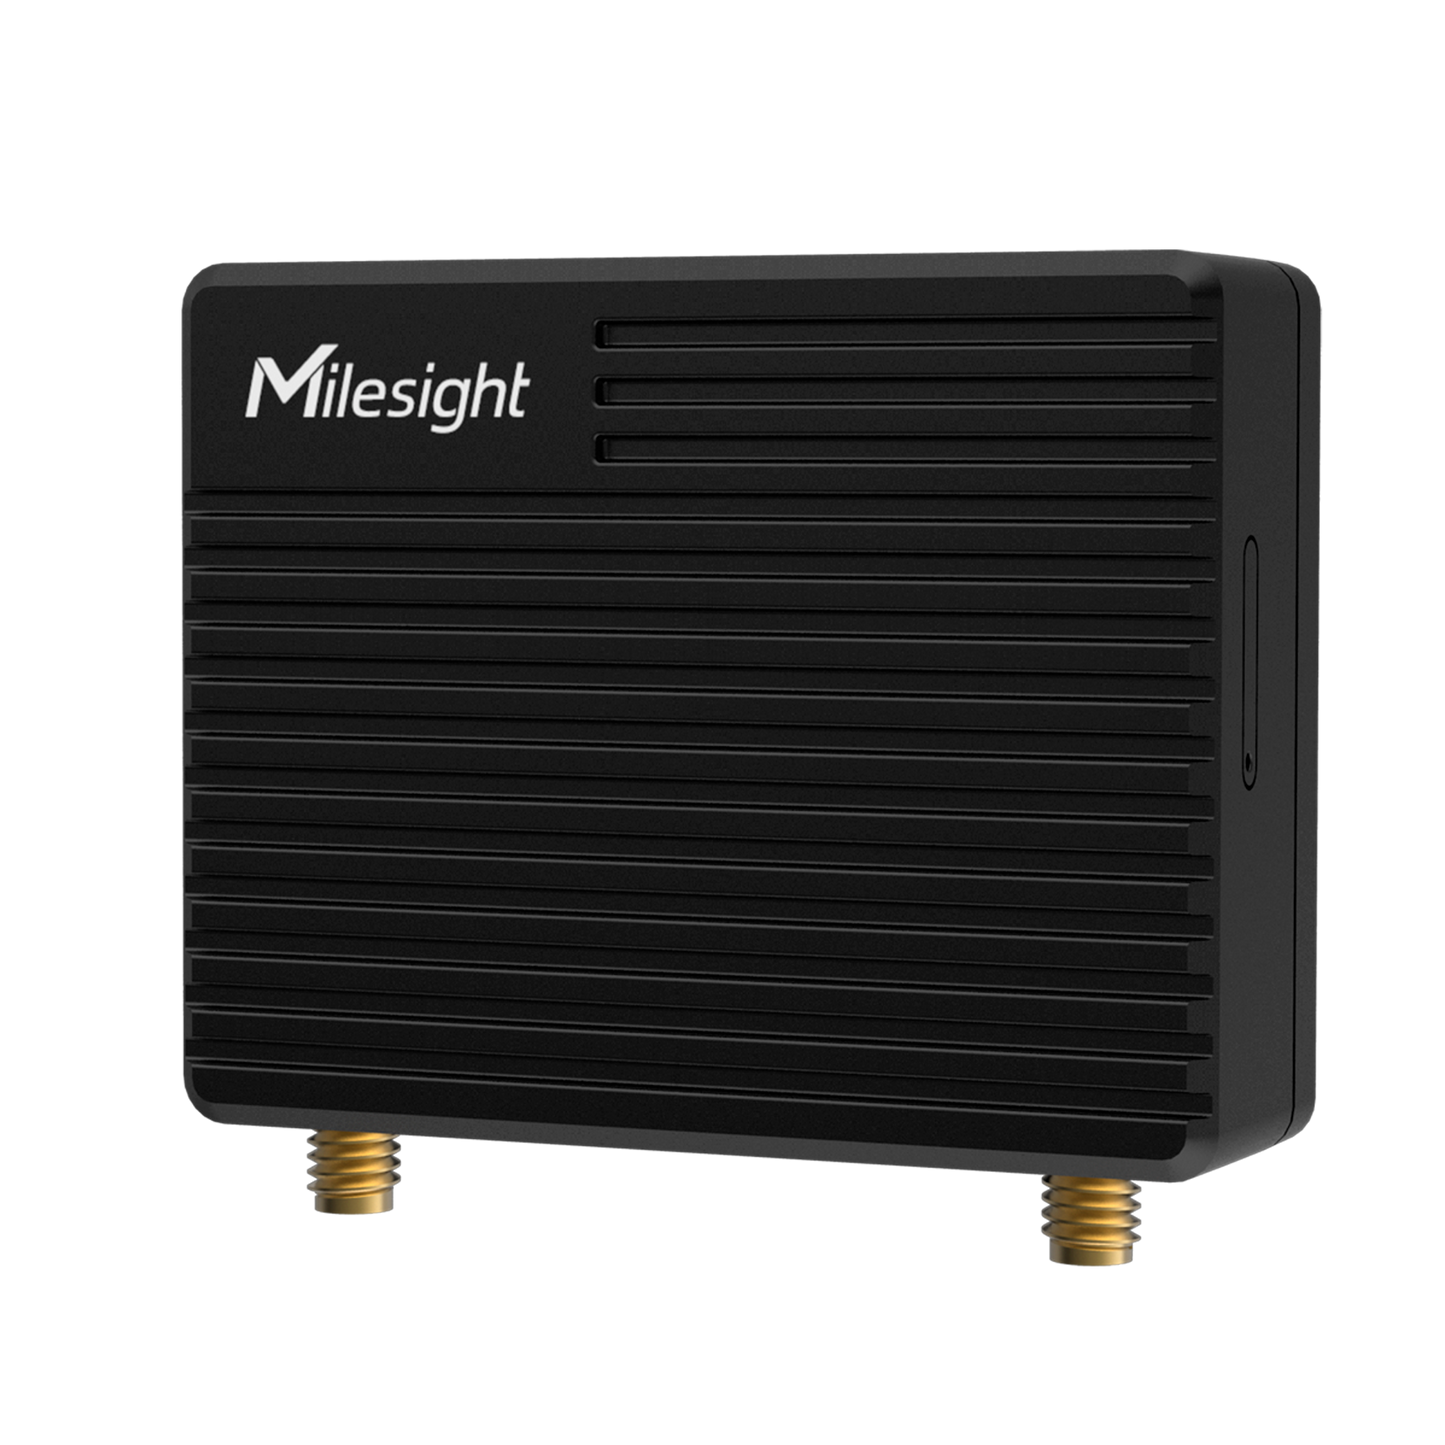 Milesight Mini 4G Router